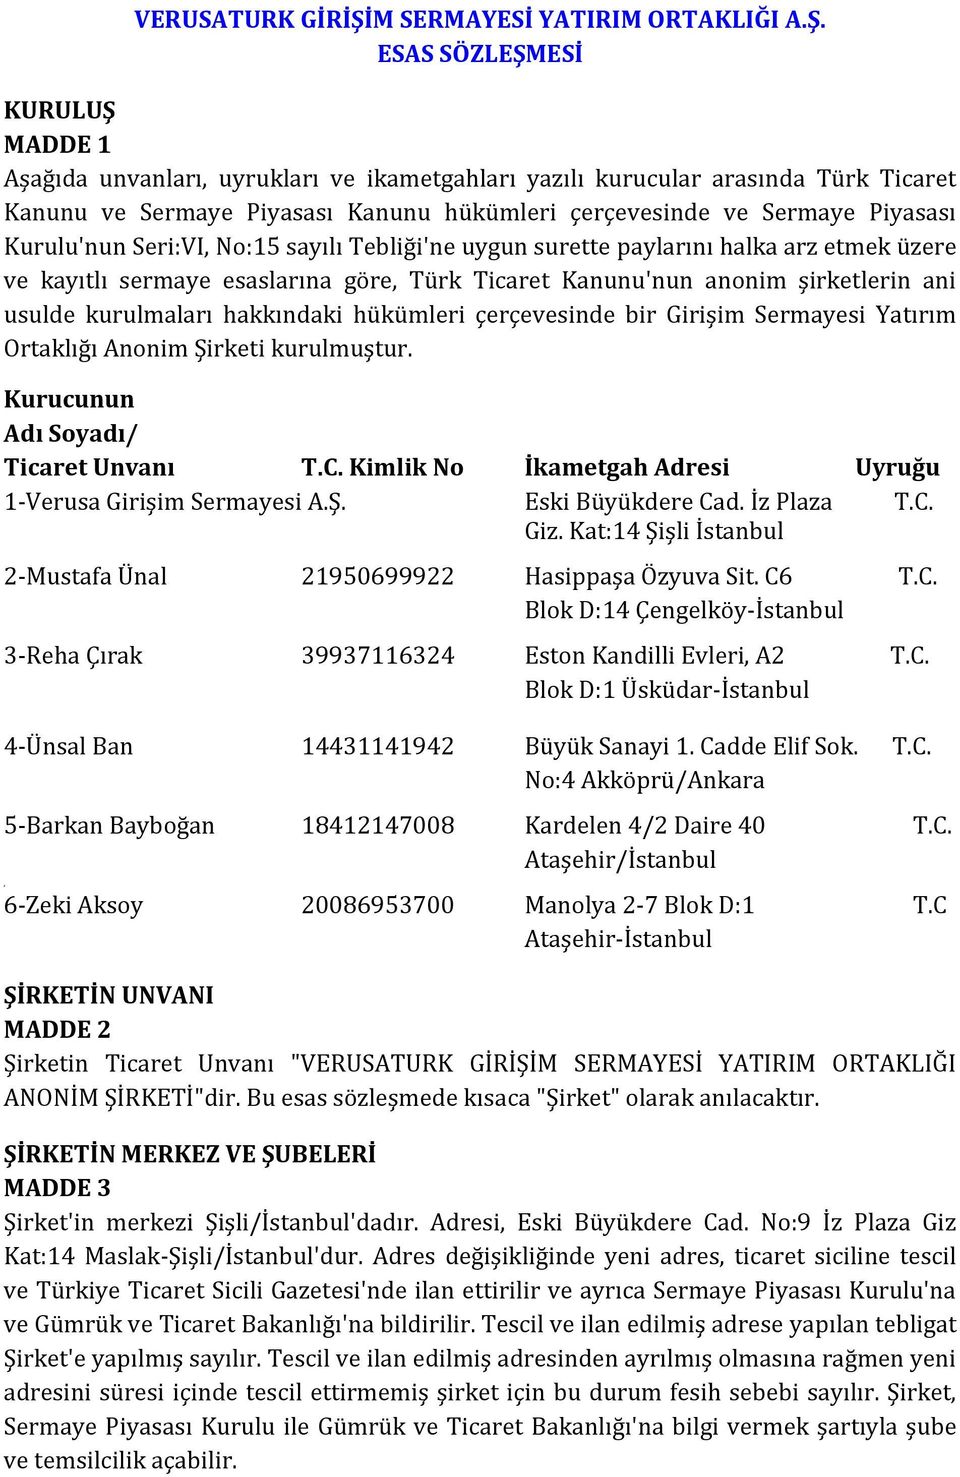 ESAS SÖZLEŞMESİ KURULUŞ MADDE 1 Aşağıda unvanları, uyrukları ve ikametgahları yazılı kurucular arasında Türk Ticaret Kanunu ve Sermaye Piyasası Kanunu hükümleri çerçevesinde ve Sermaye Piyasası